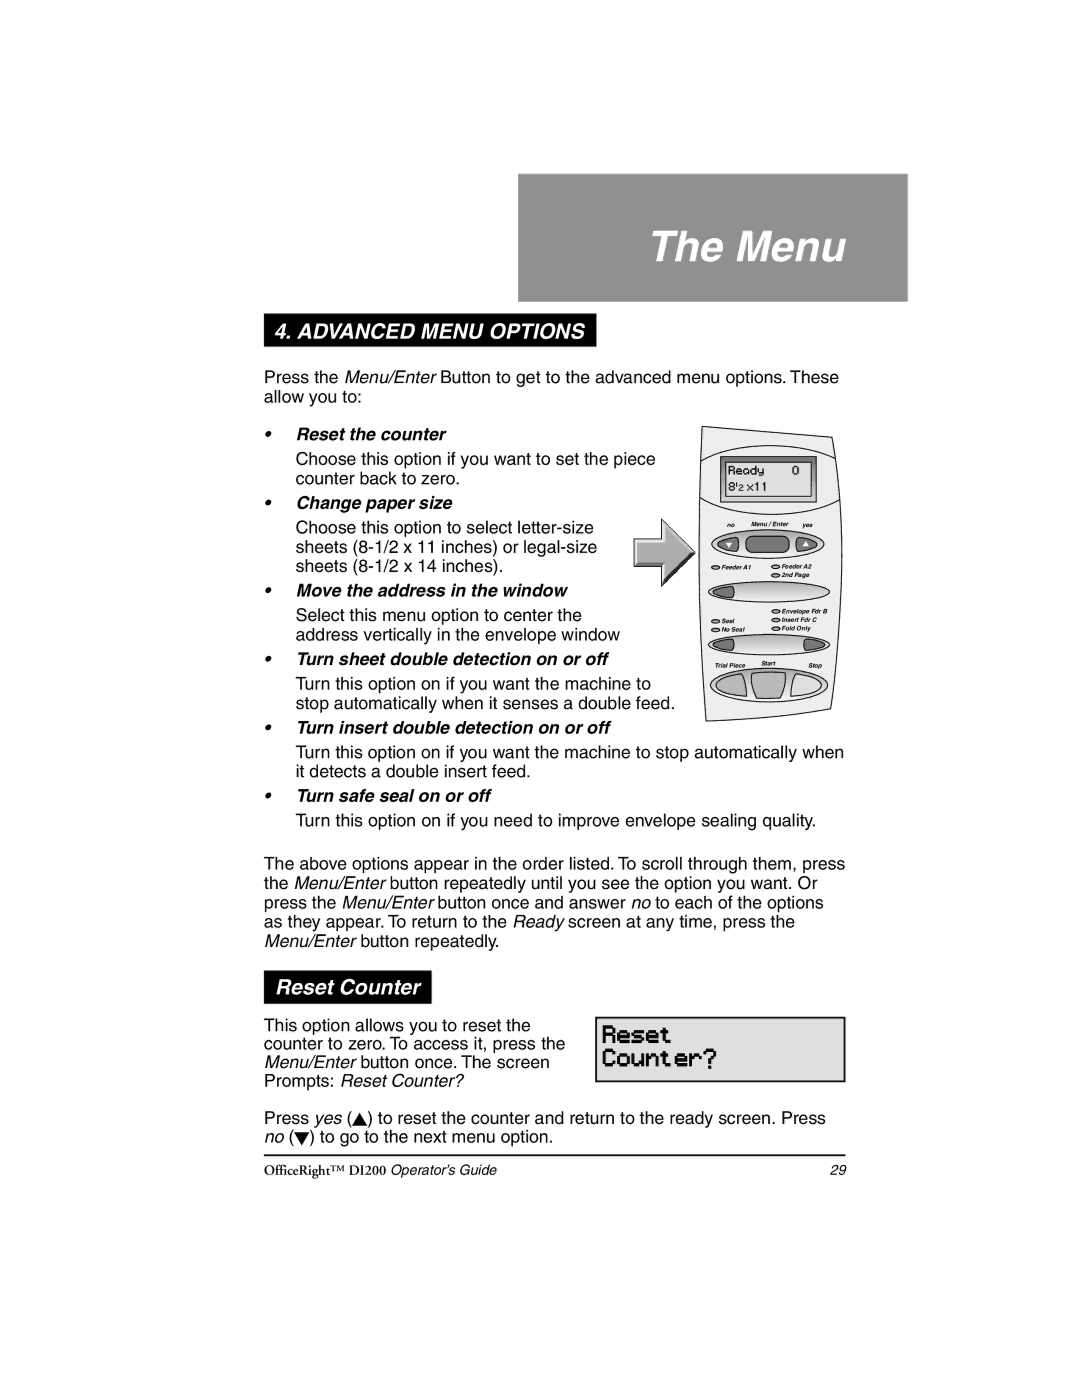 Pitney Bowes DI200 manual Menu, Reset Counter 